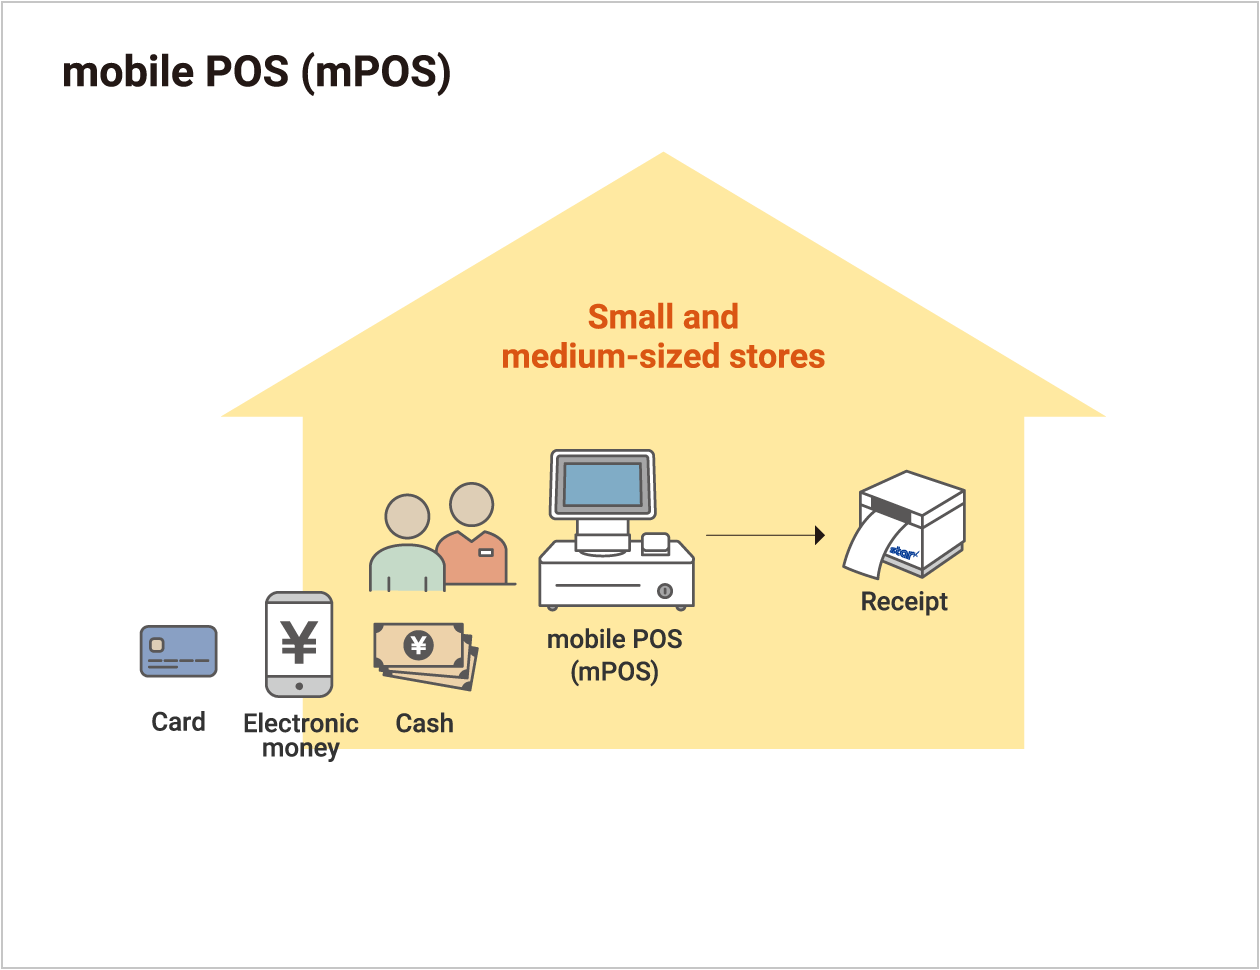 mobile POS (mPOS)